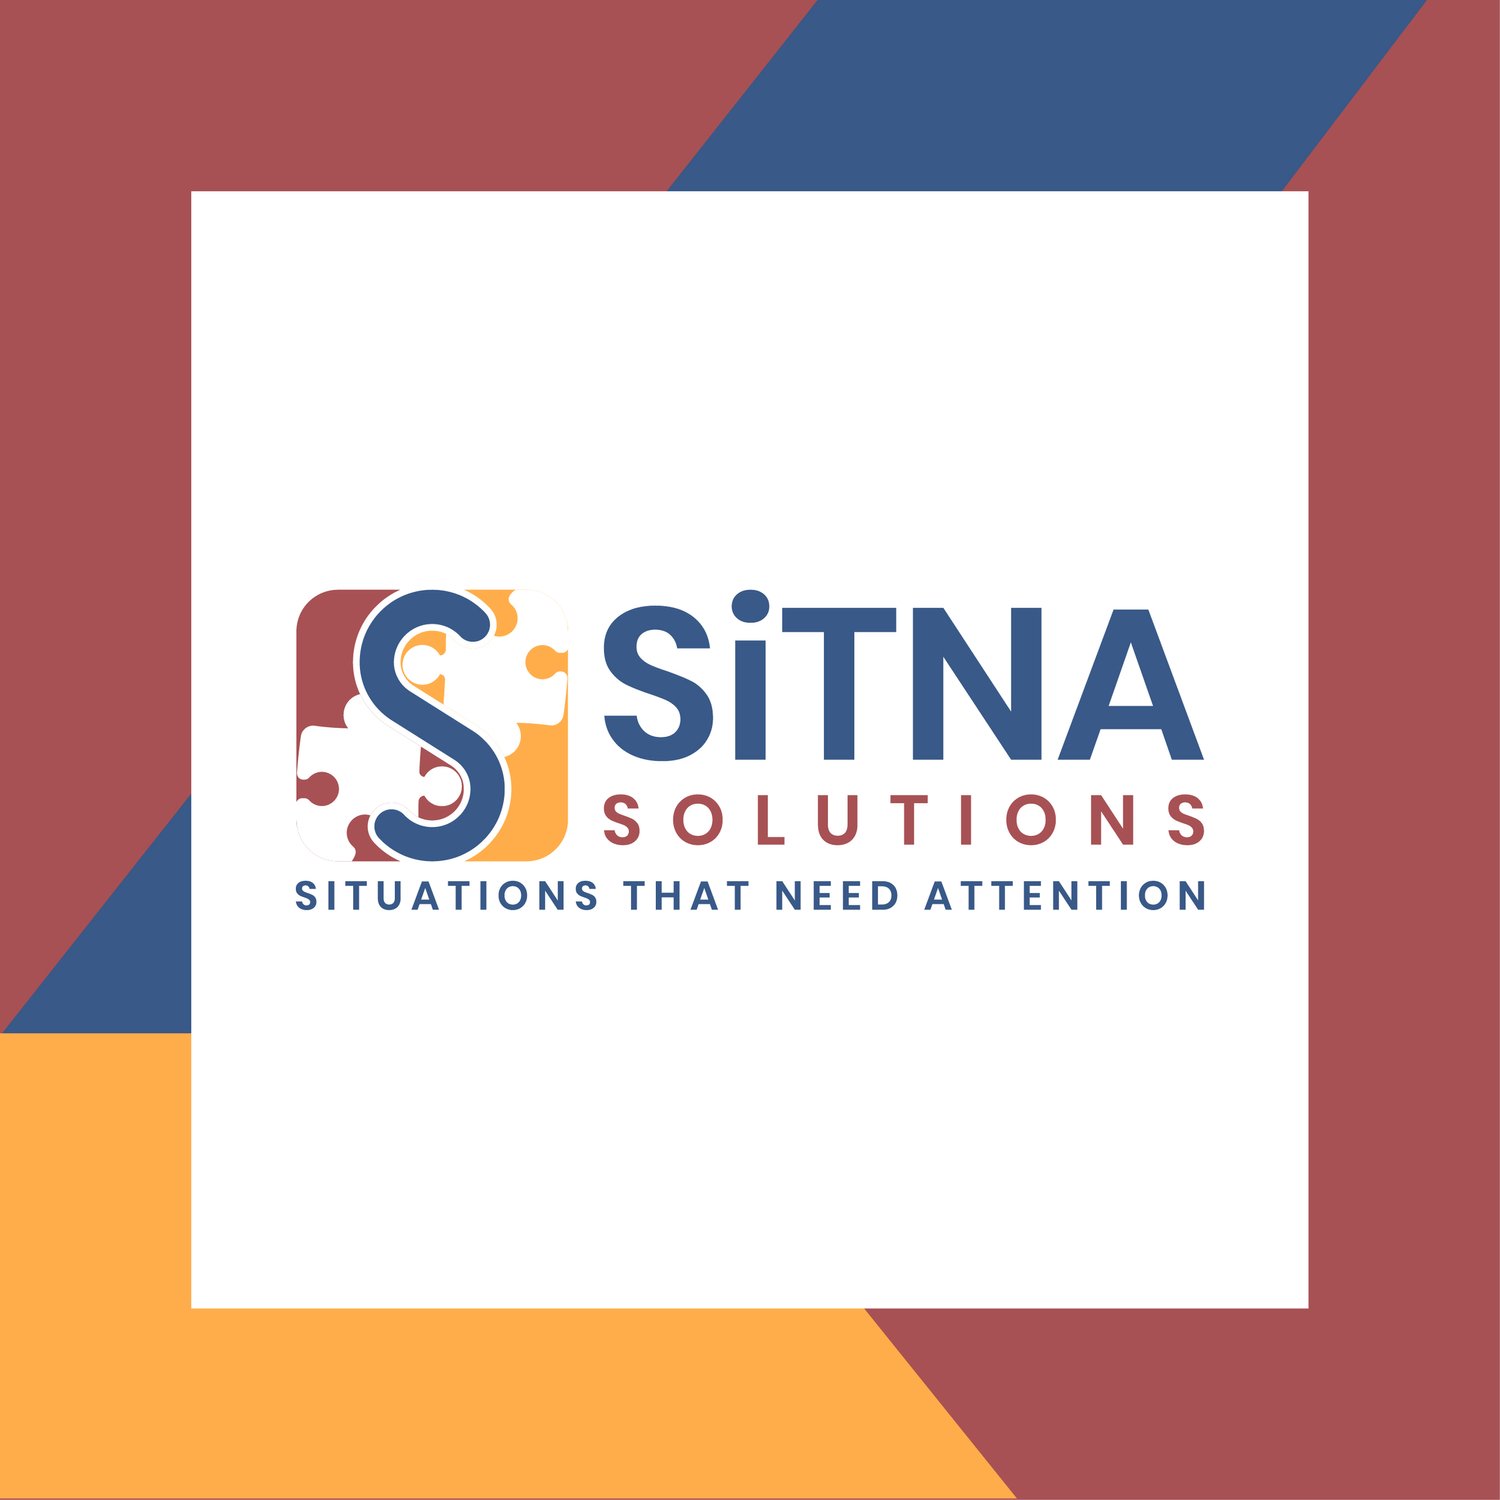 SiTNA Solutions